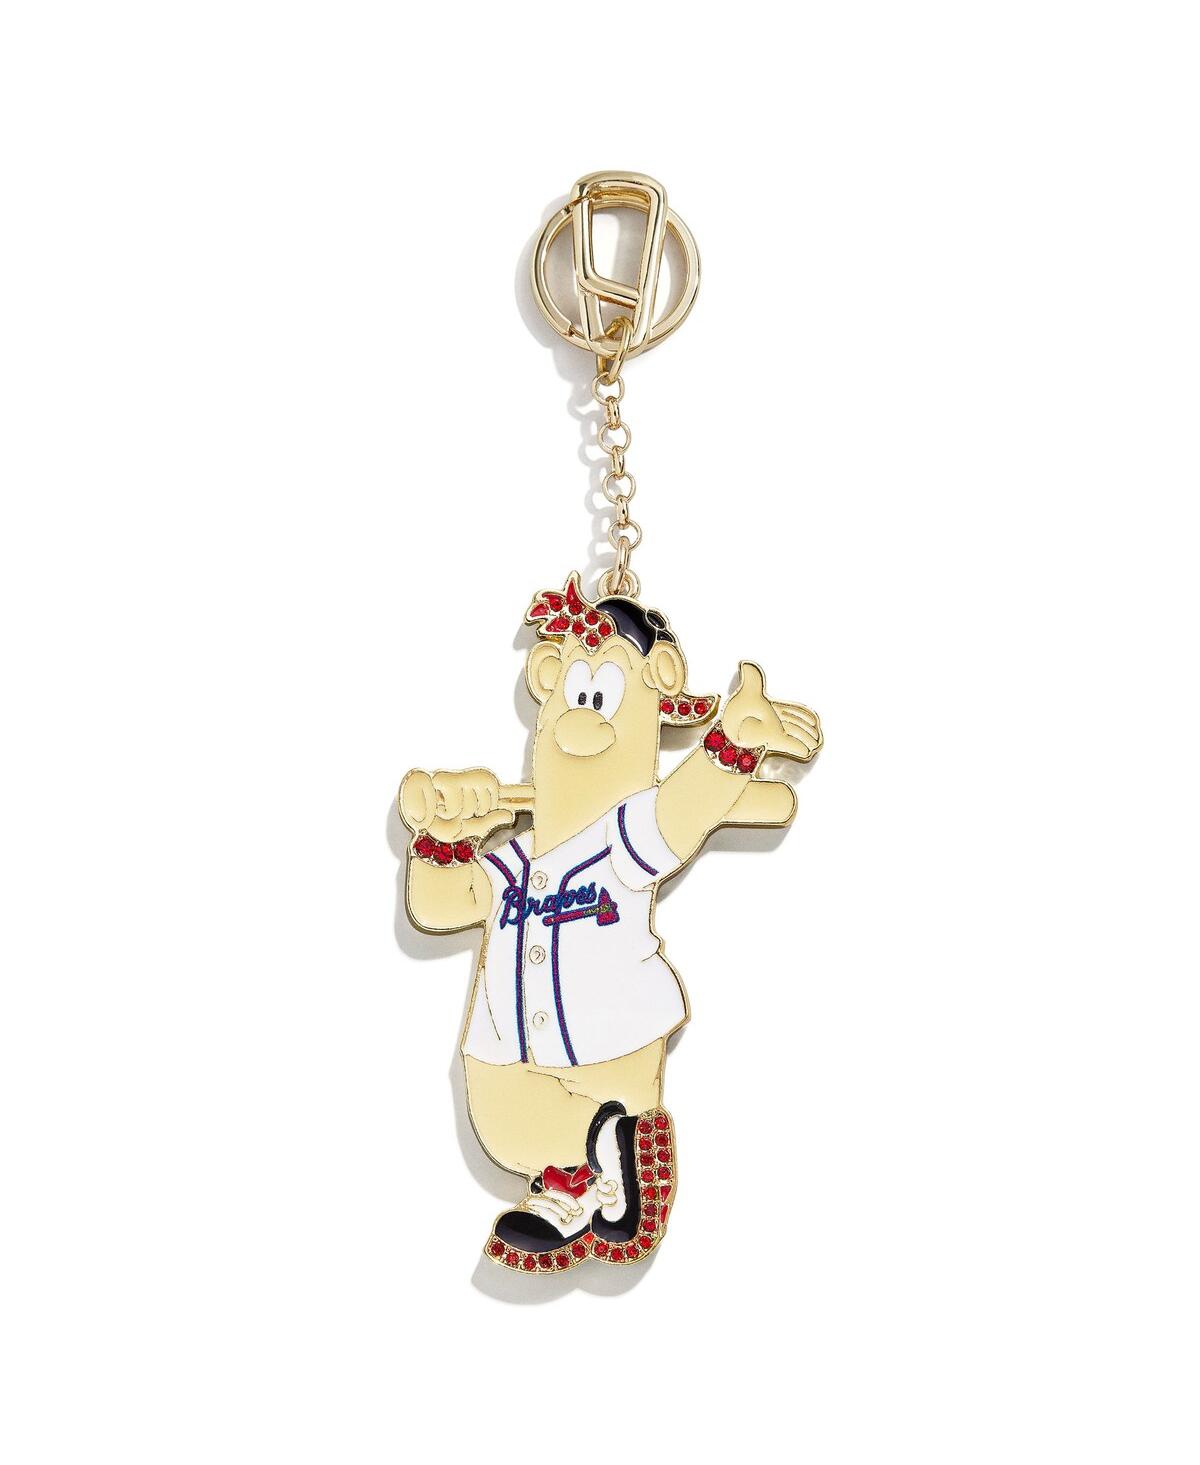 Atlanta Braves Mascot Bag Keychain - Gold